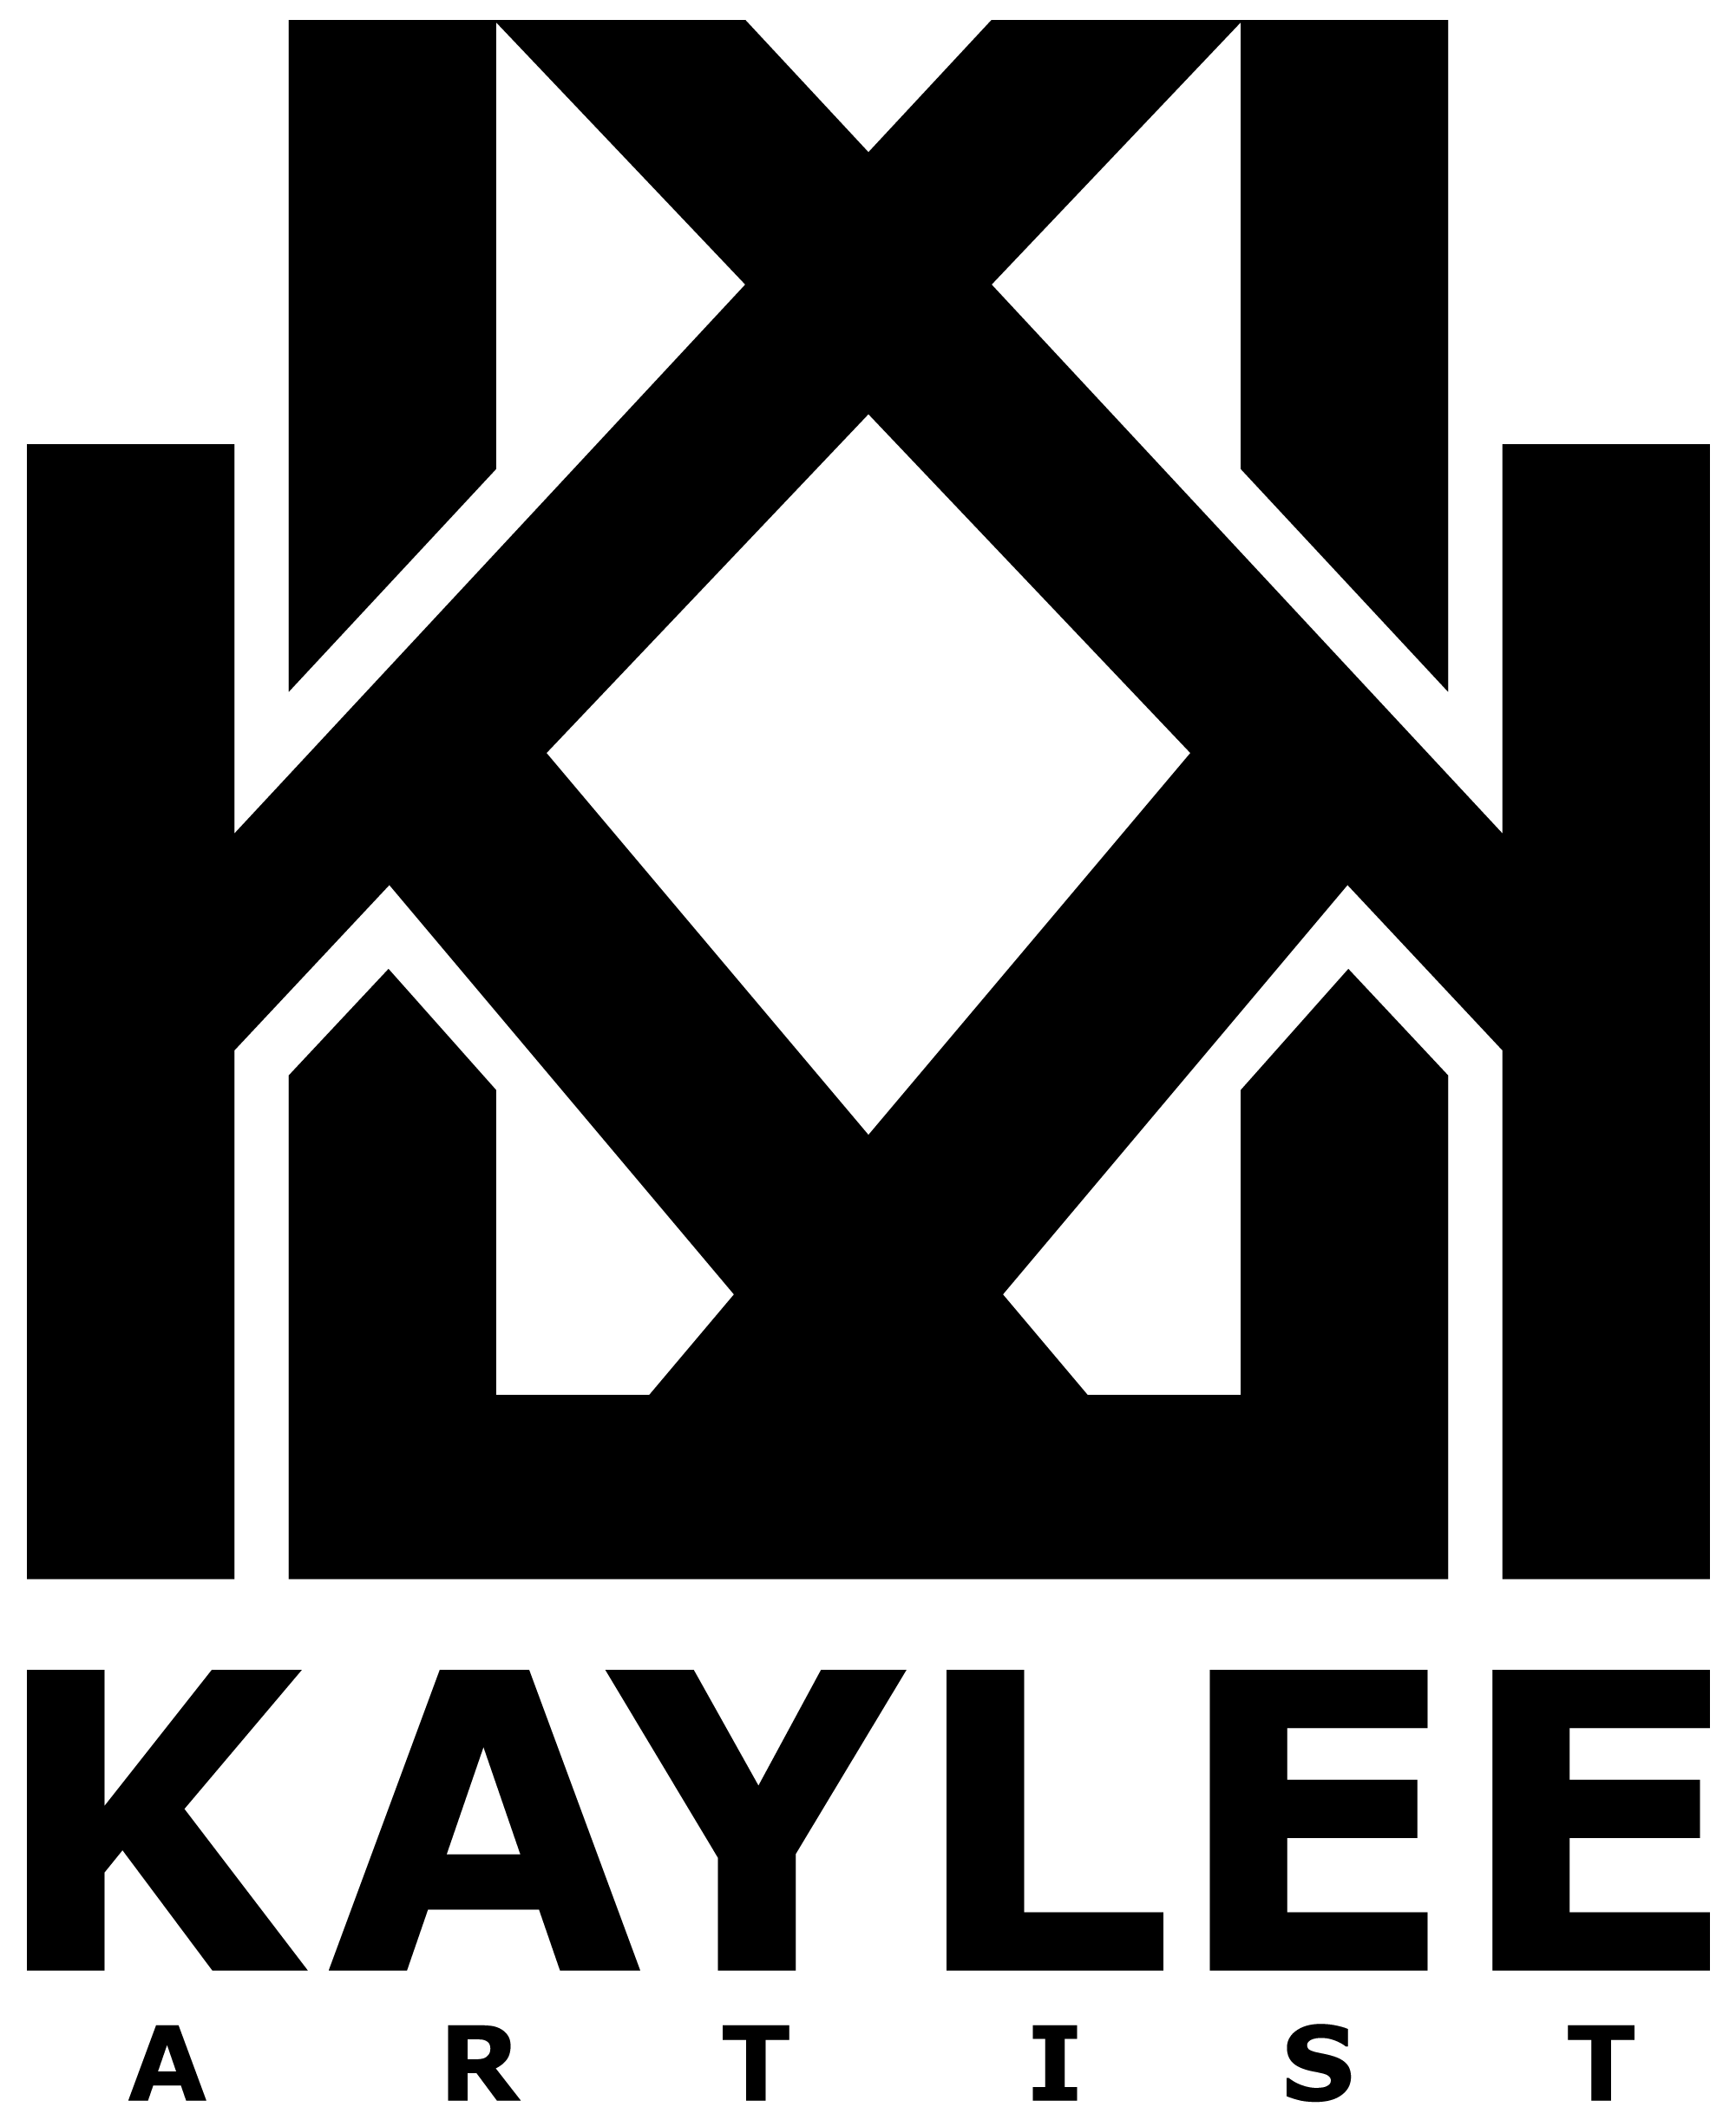 Kay Lee